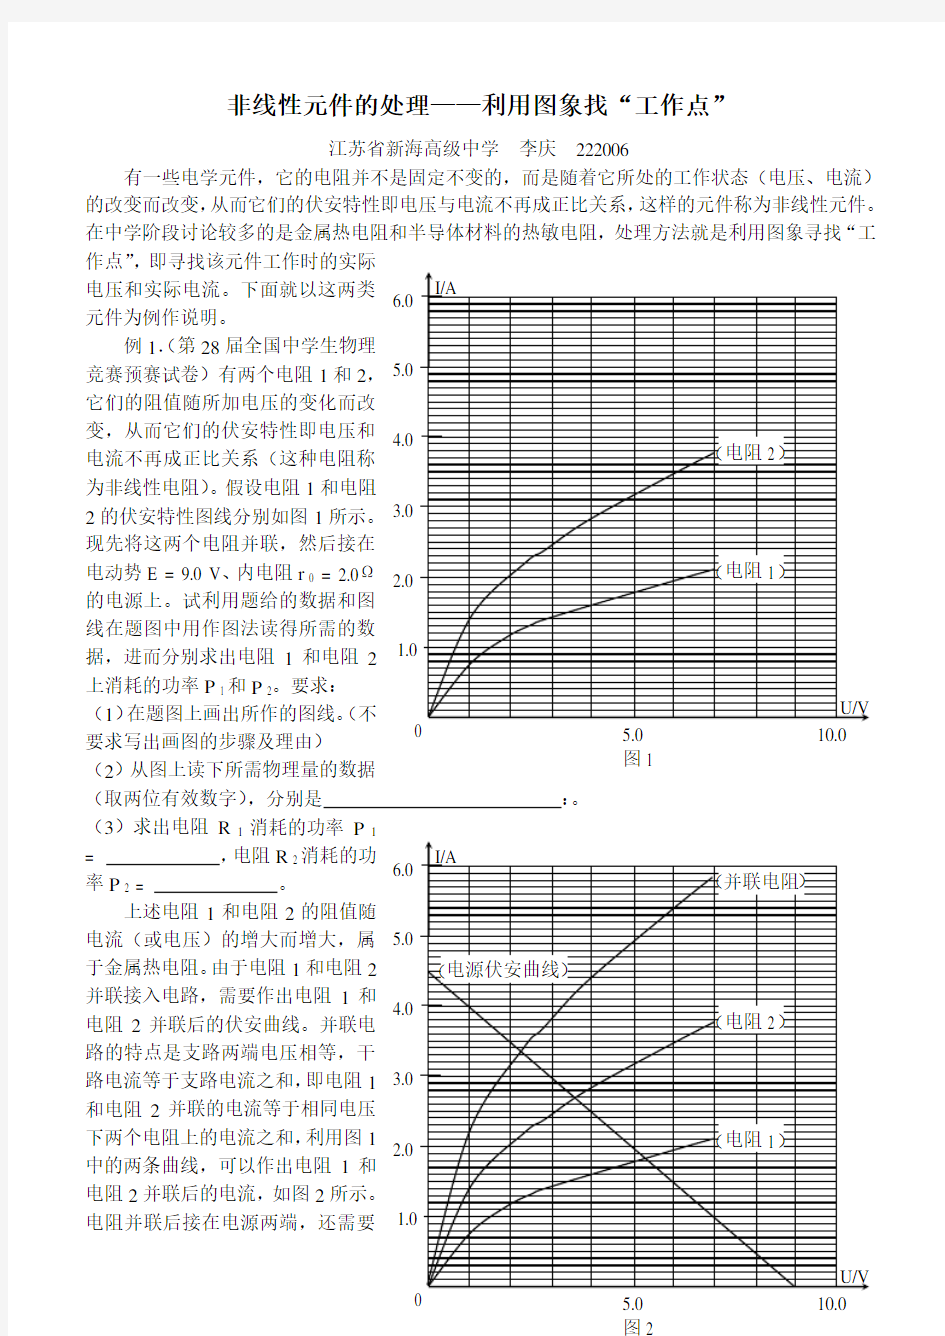 非线性元件的处理方法-江苏新海高级中学